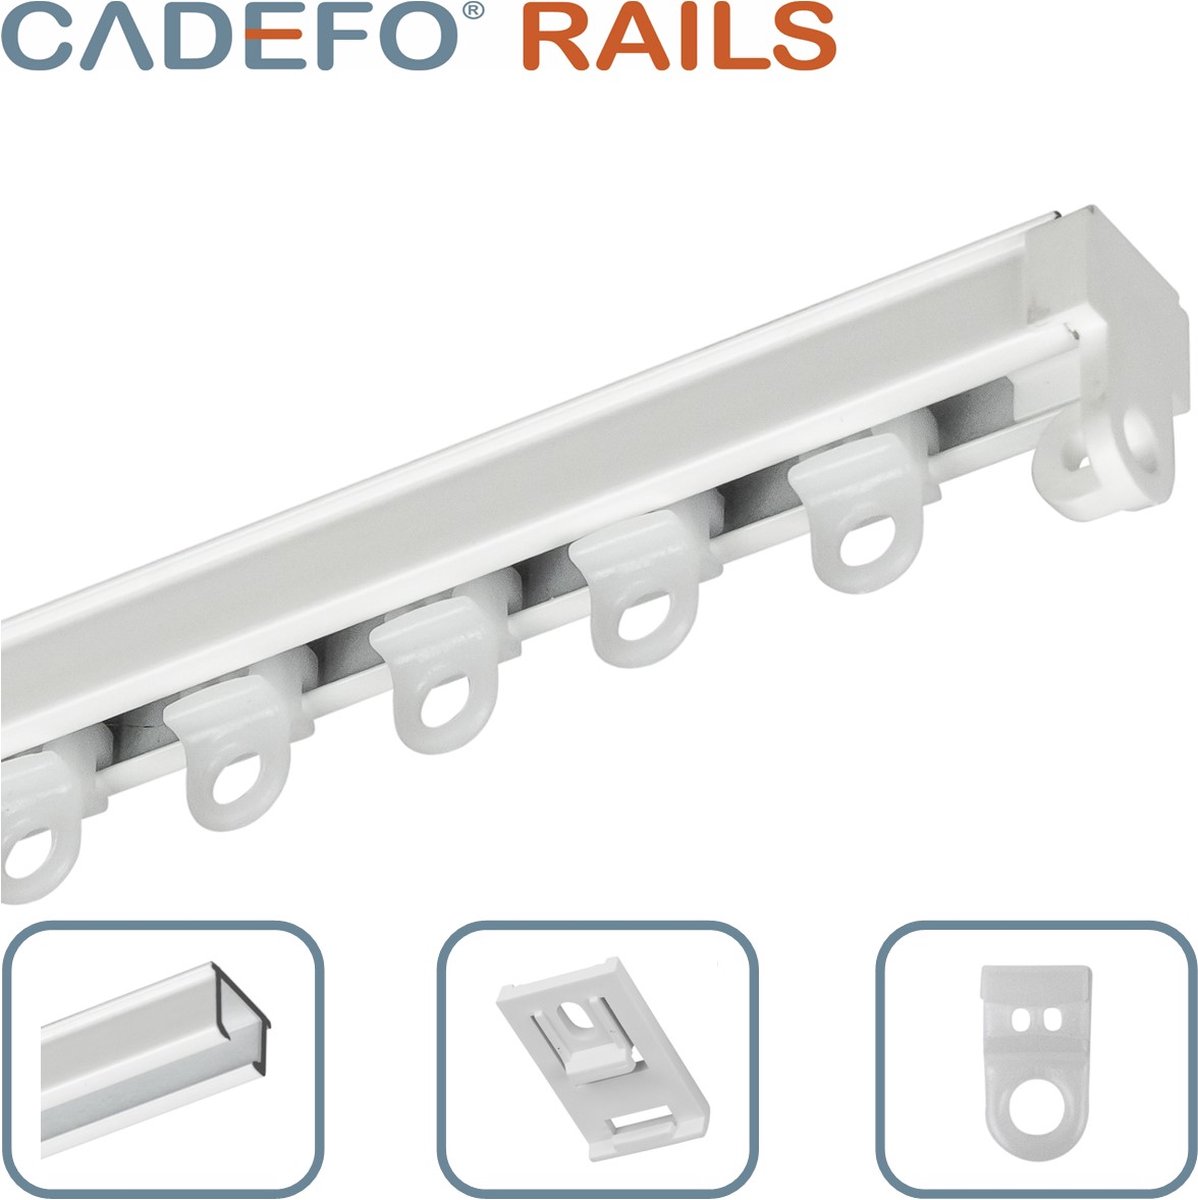 CADEFO RAILS (551 - 600 cm) Gordijnrails - Compleet op maat! - UIT 1 STUK - Leverbaar tot 6 meter - Plafondbevestiging - Lengte 592 cm